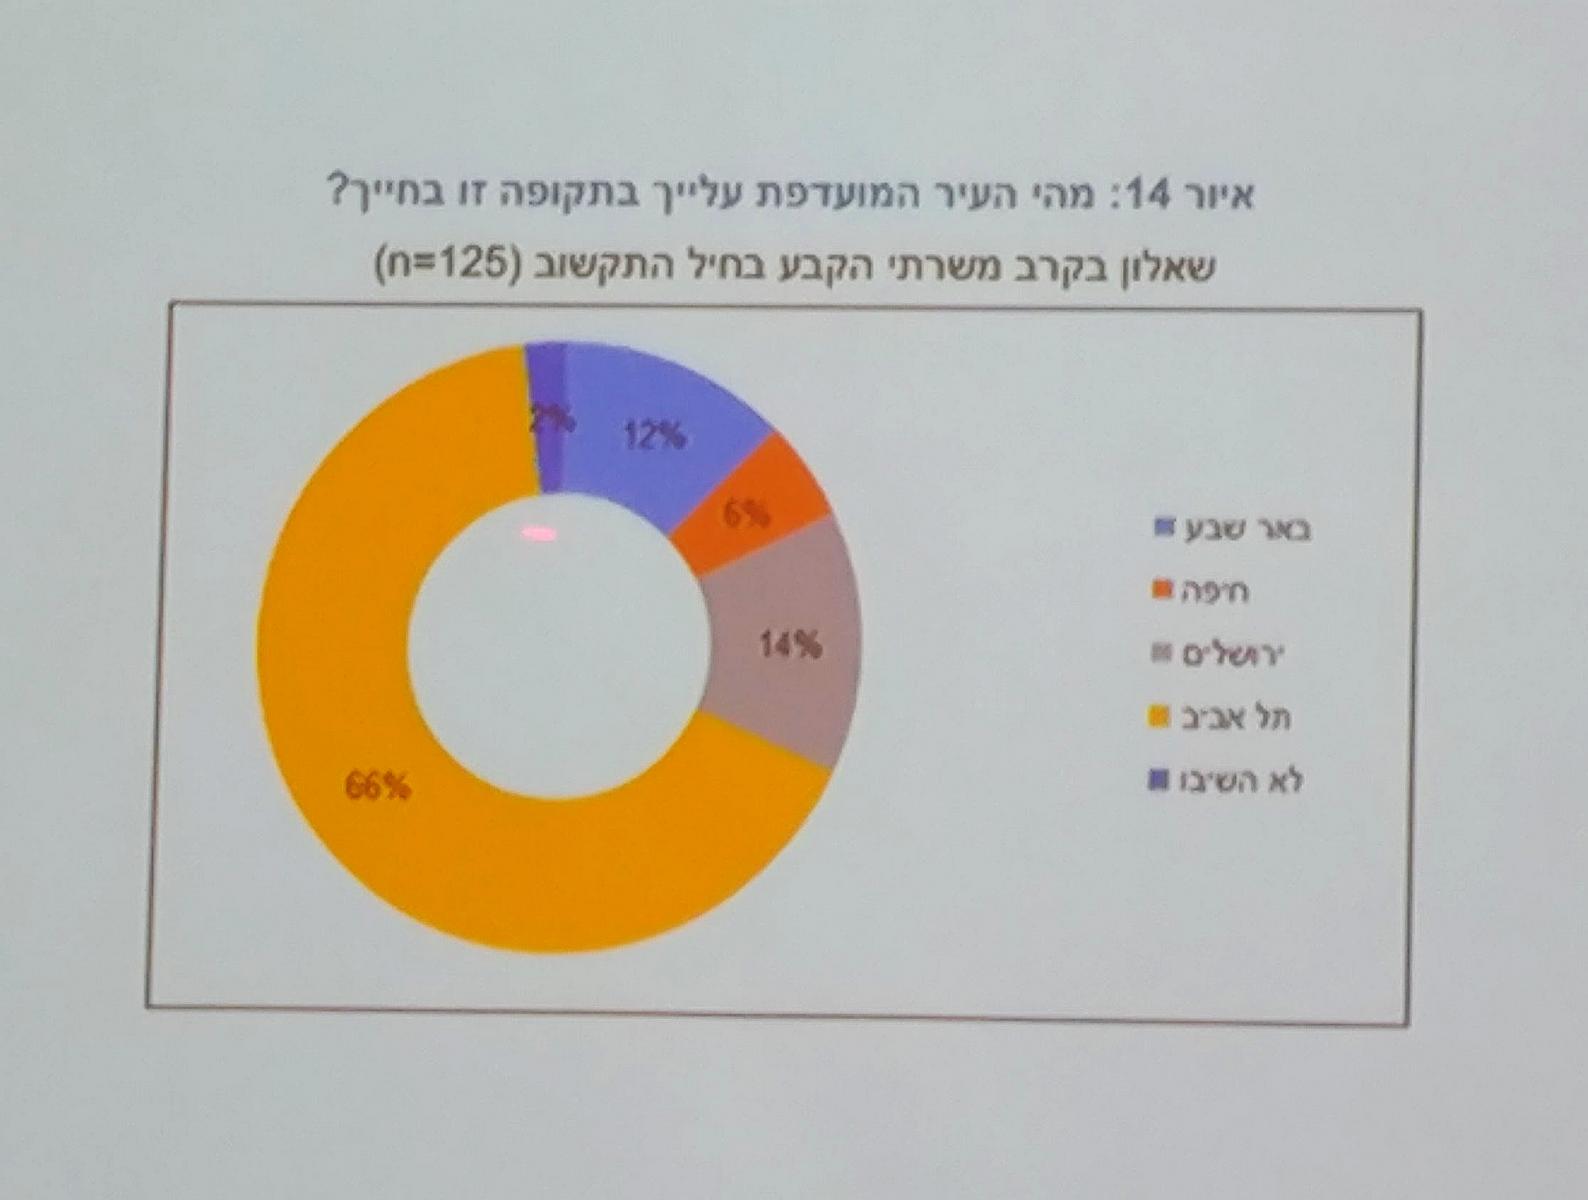 אנשי 8200 רוצים תל אביב (צילום: דני בלר)